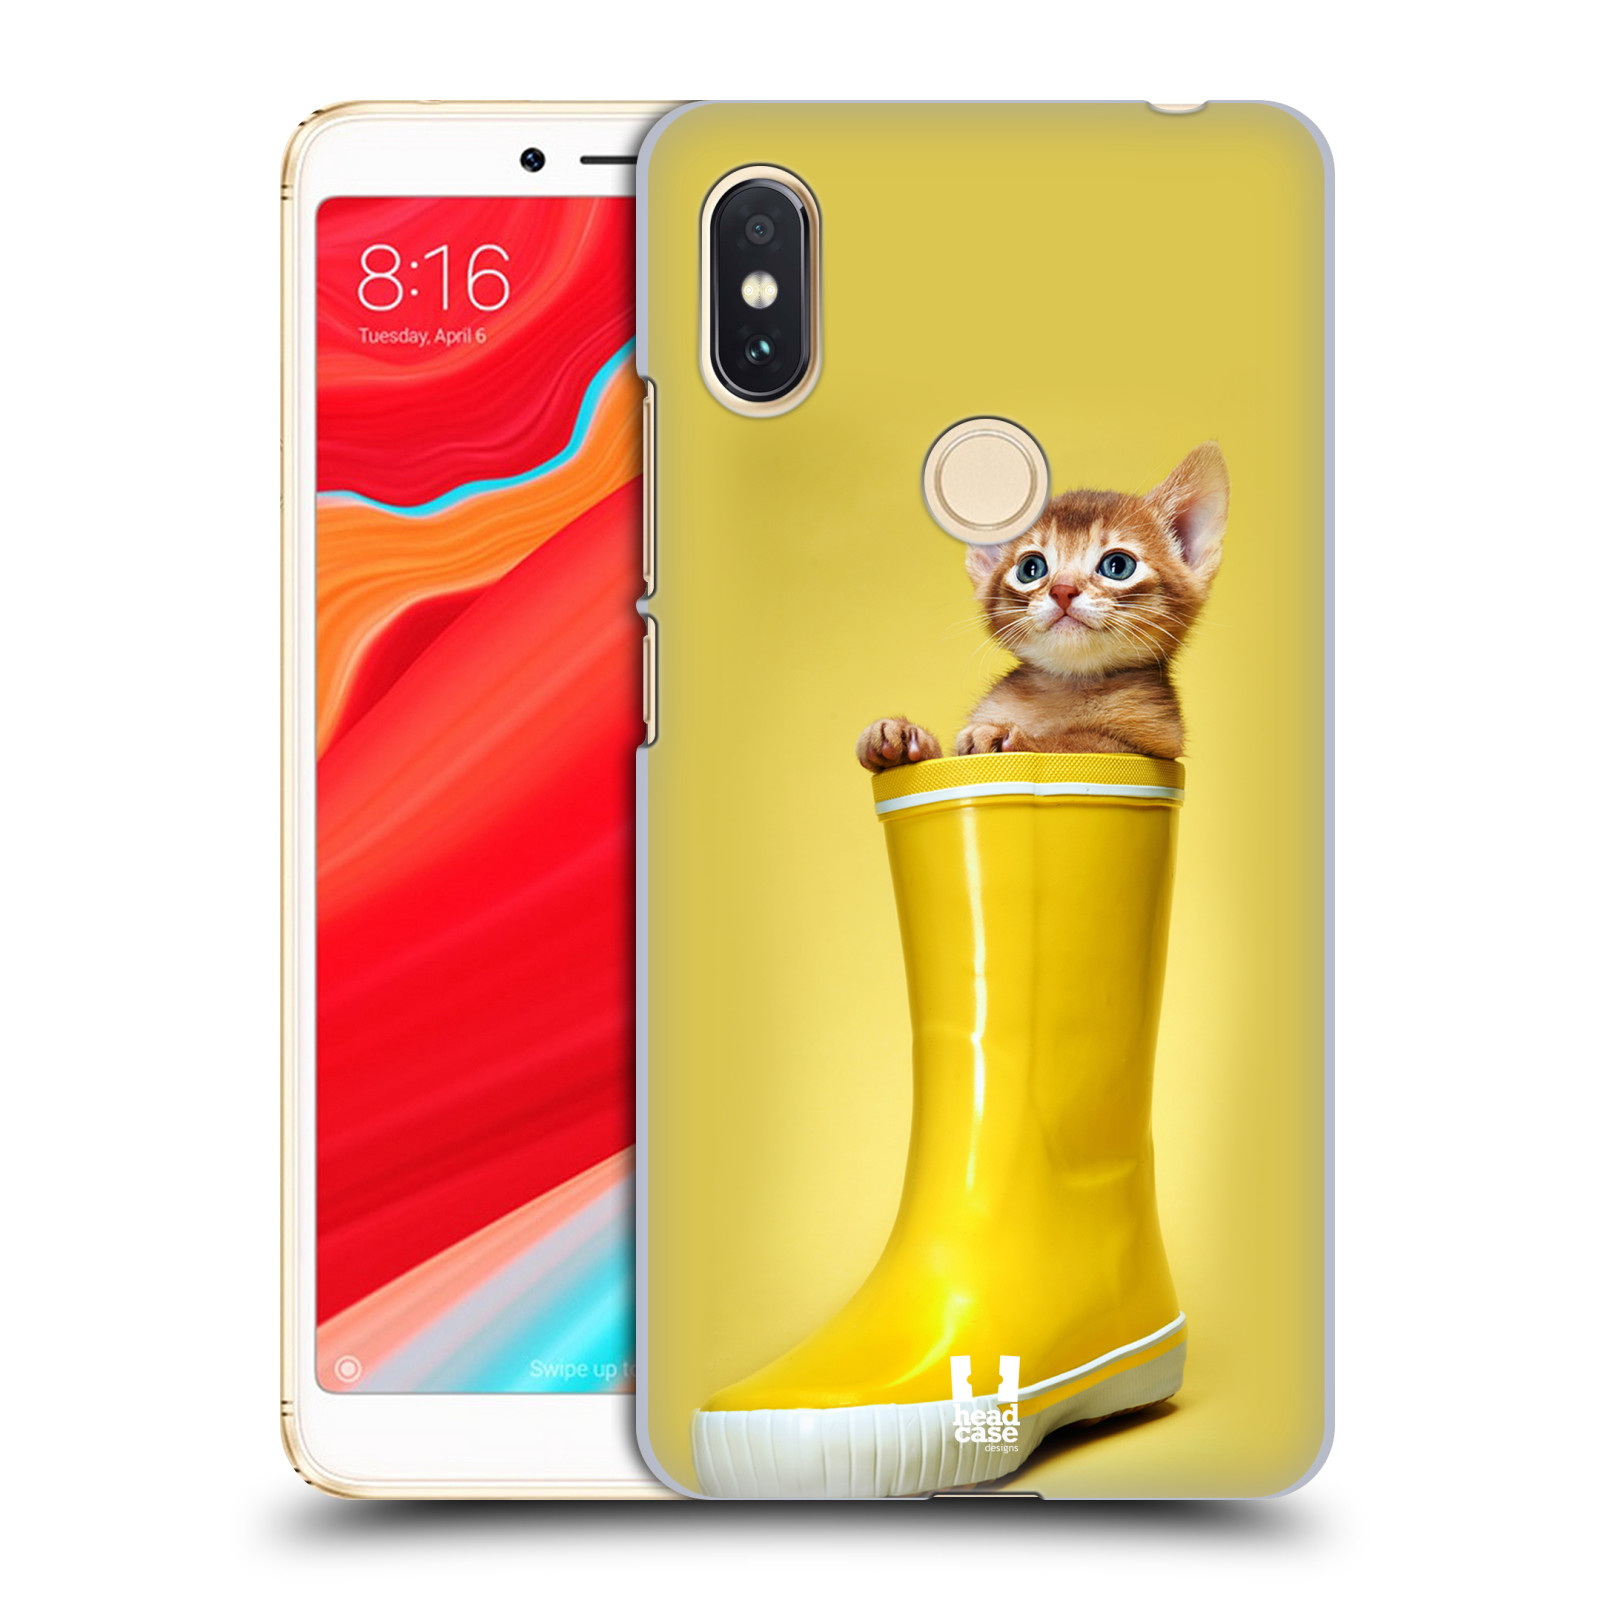 HEAD CASE plastový obal na mobil Xiaomi Redmi S2 vzor Legrační zvířátka kotě v botě žlutá